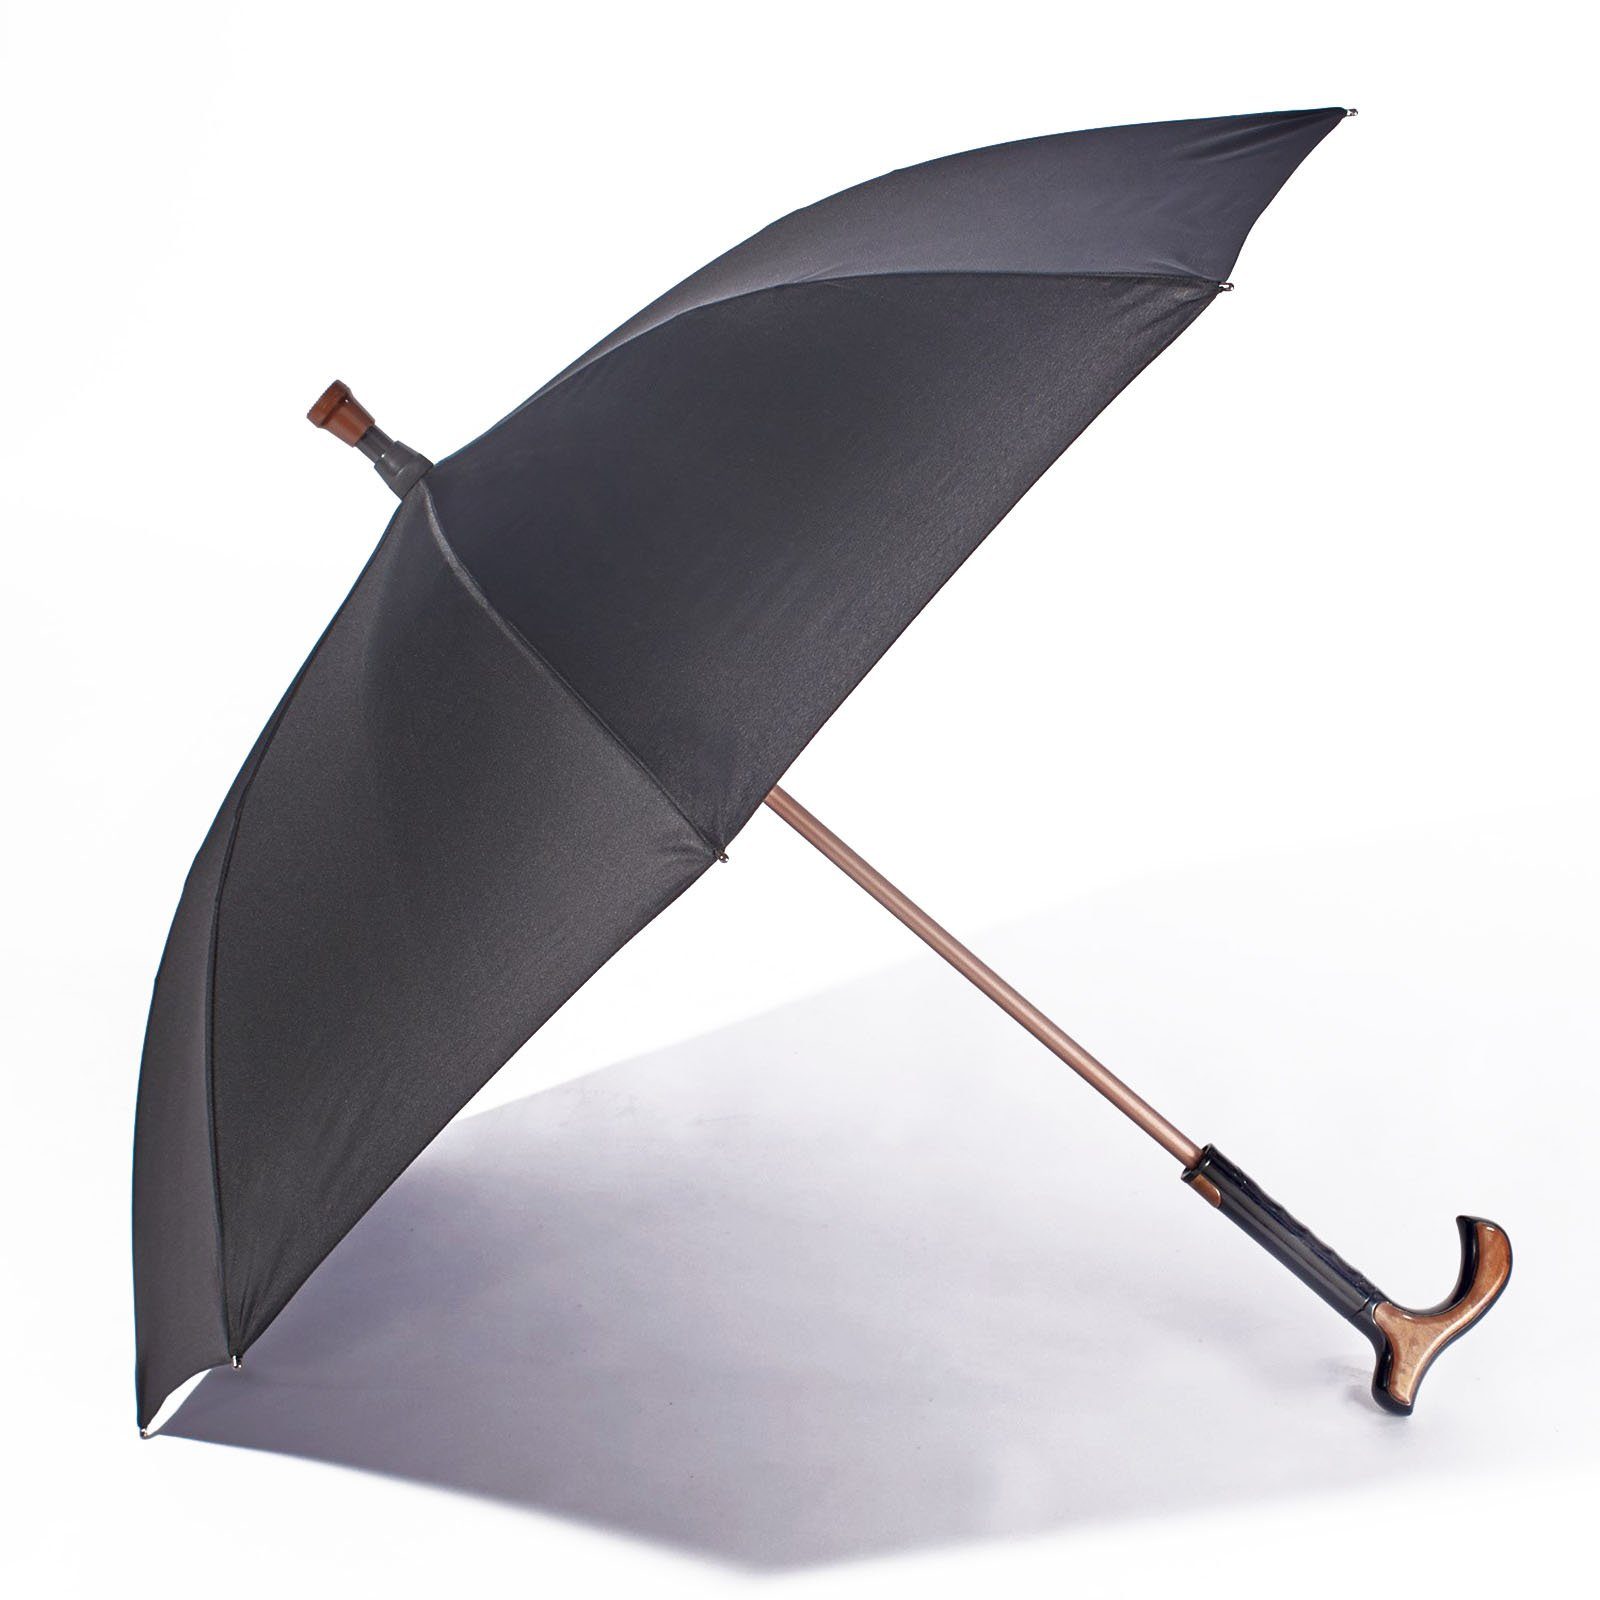 HAC24 Gehstock Spazierstock Gehhilfe, mit Regenschirm integriertem